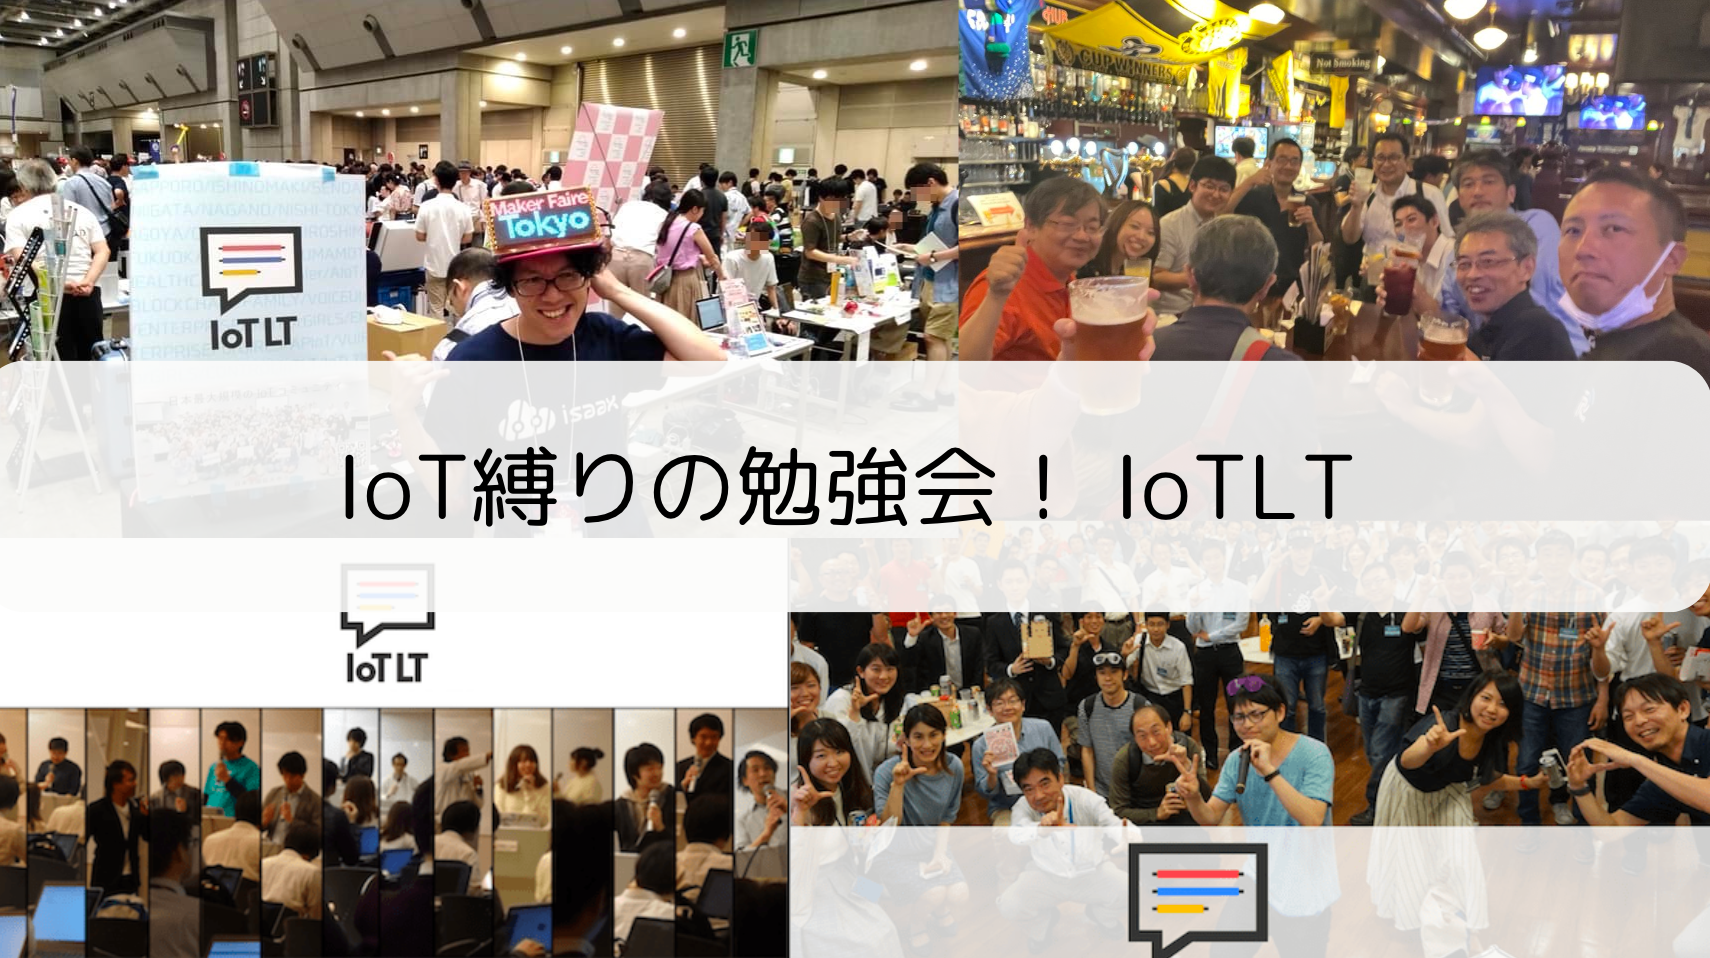 イベント「IoT縛りの勉強会! IoTLT vol.104」レポートのサムネイル画像